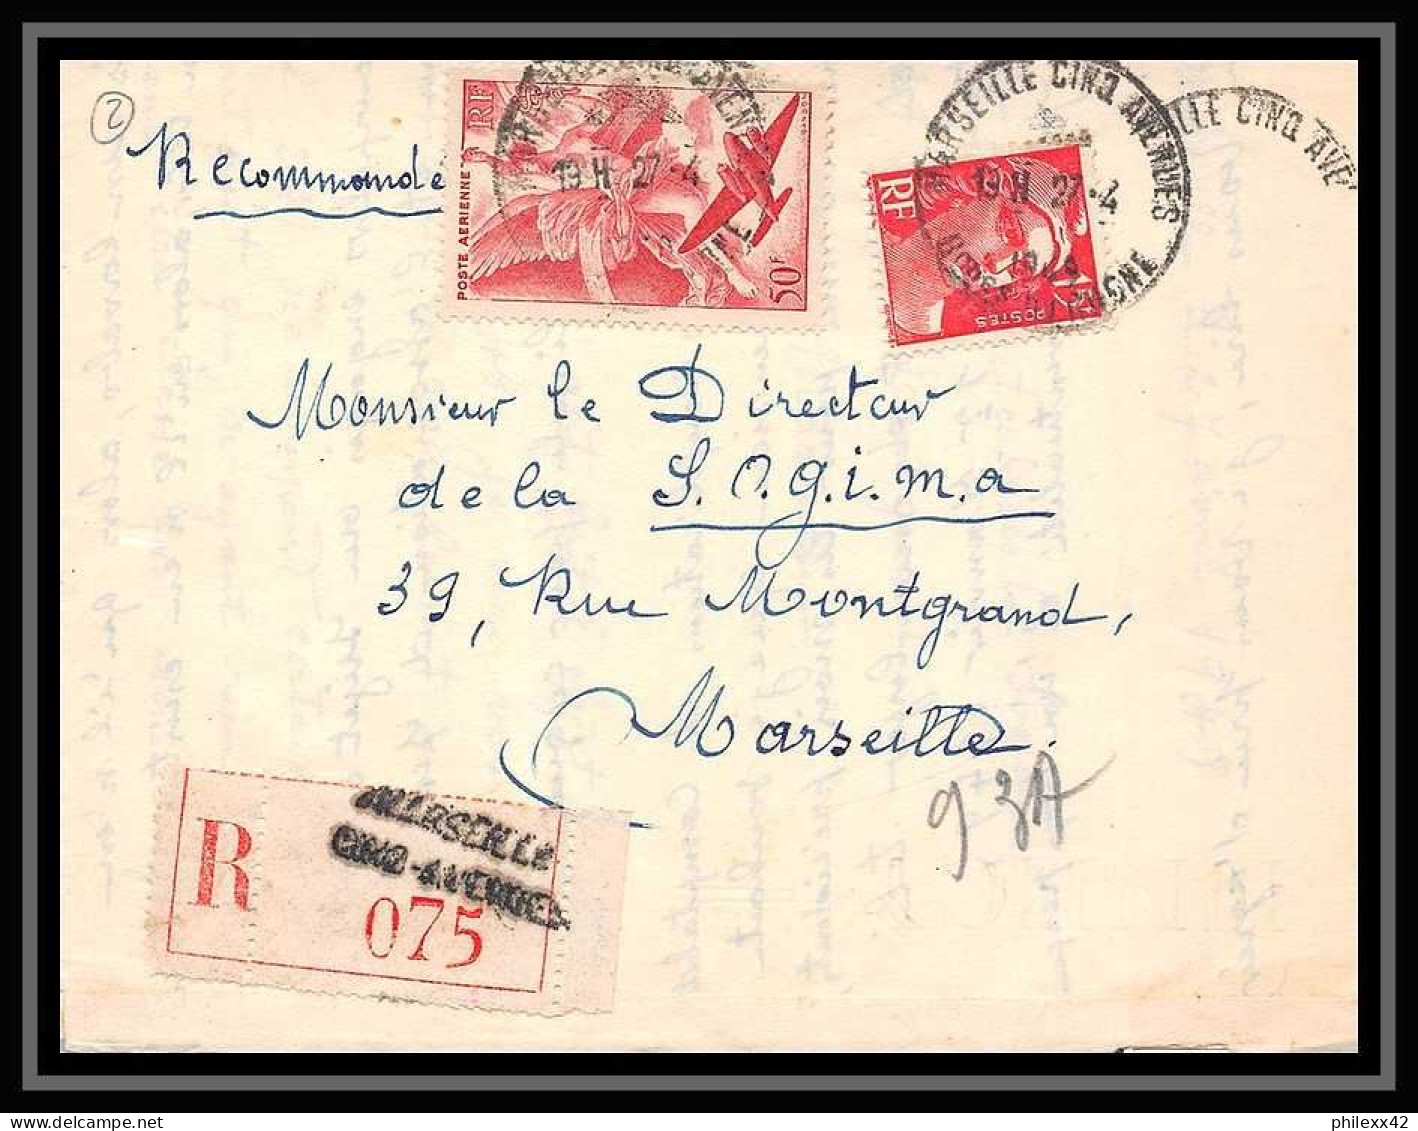 109918 Lettre Recommandé Cover Bouches Du Rhone PA Poste Aerienne N°17 Iris 1949 Marseille Cinq Avenues A5 - 1960-.... Covers & Documents